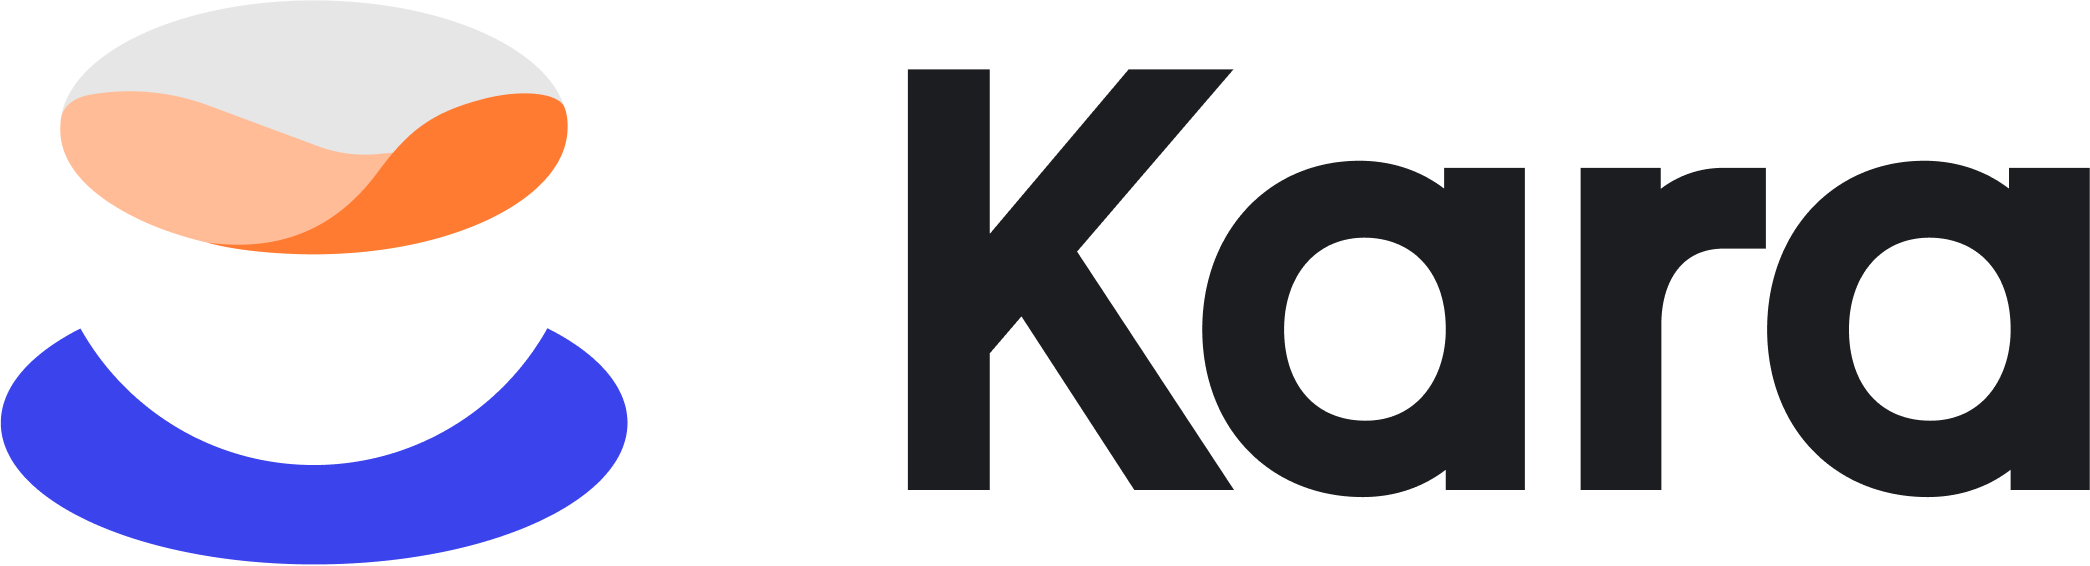 logo Kara